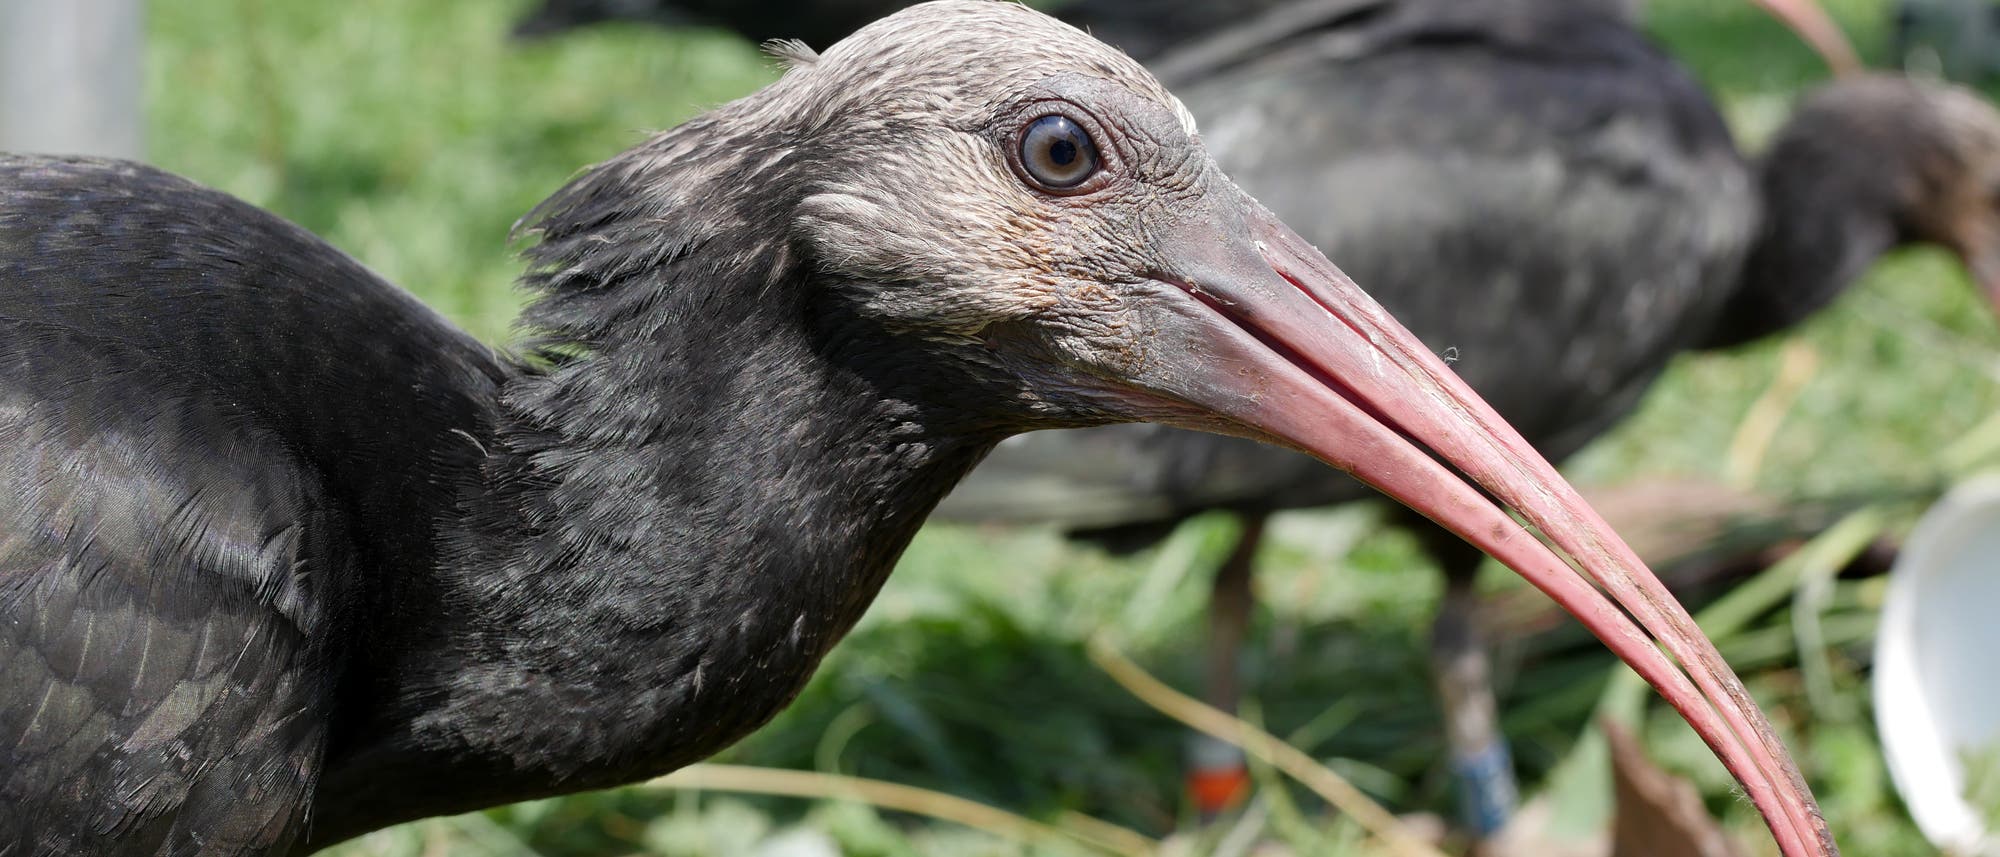 Der Waldrapp ist ein schwarzer Vogel mit kahlem Kopf und langem Schnabel